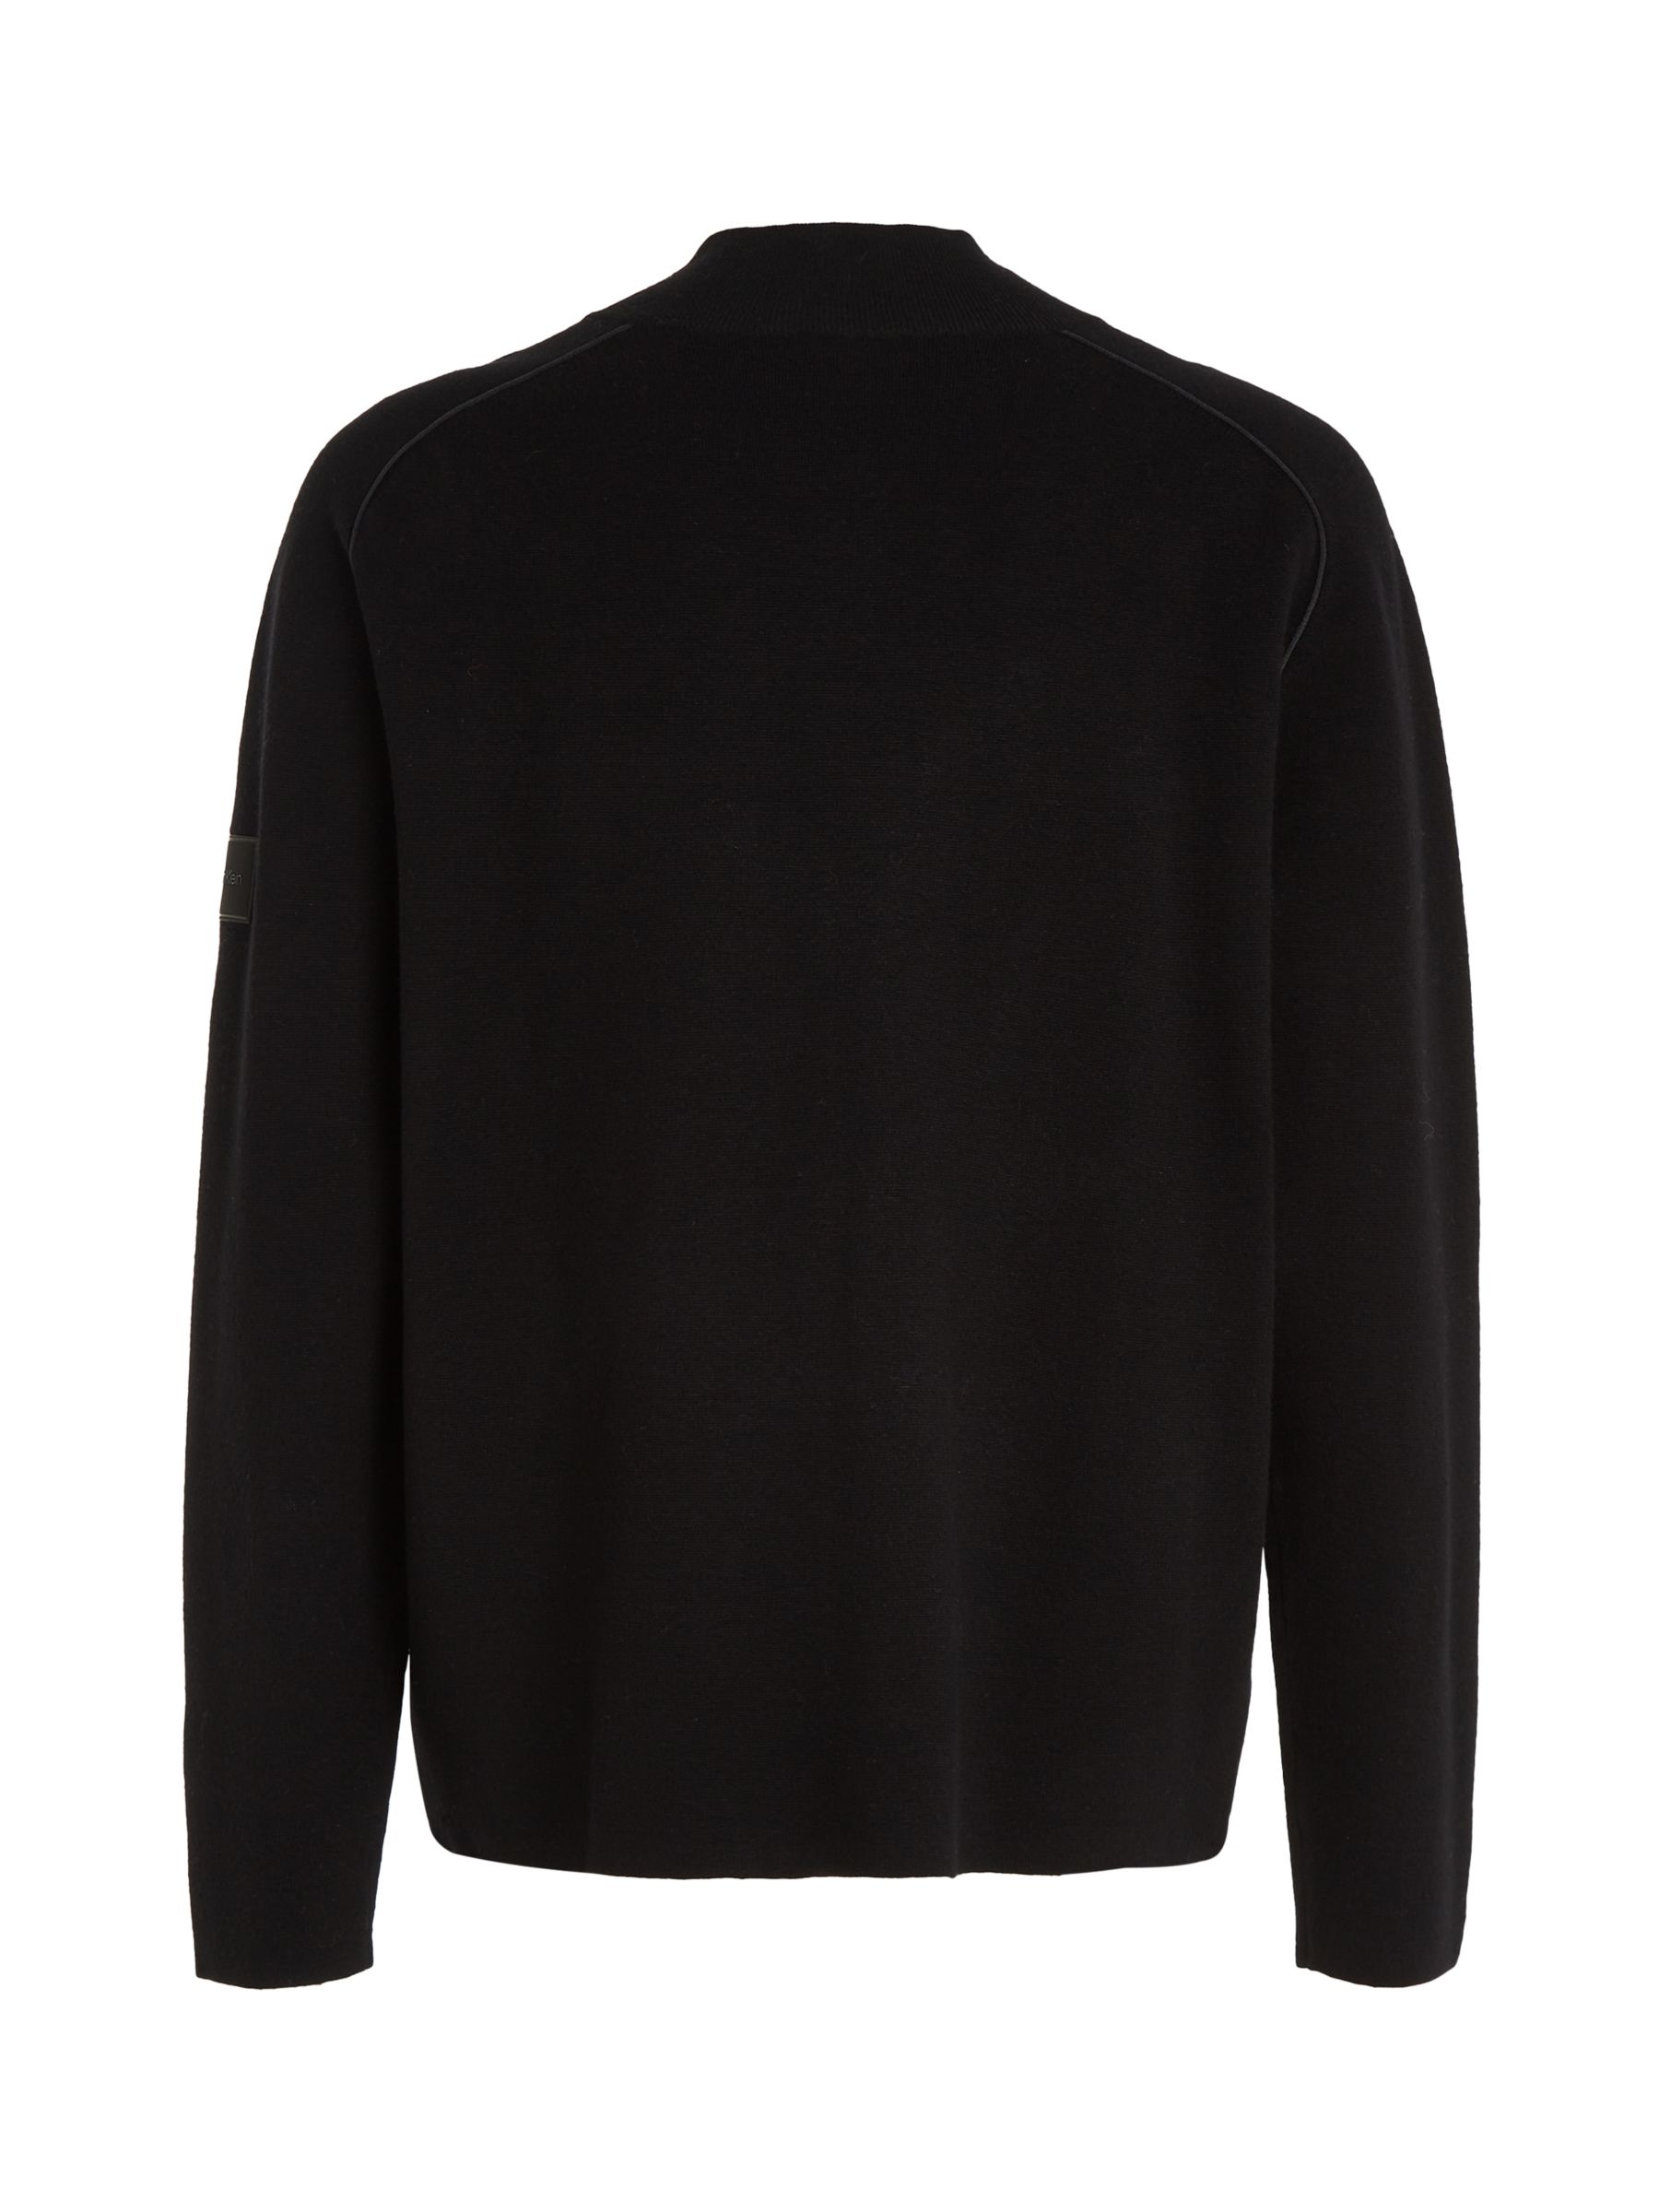 Buy Calvin Klein Milano Stitch Zip Jumper, Black Online at johnlewis.com